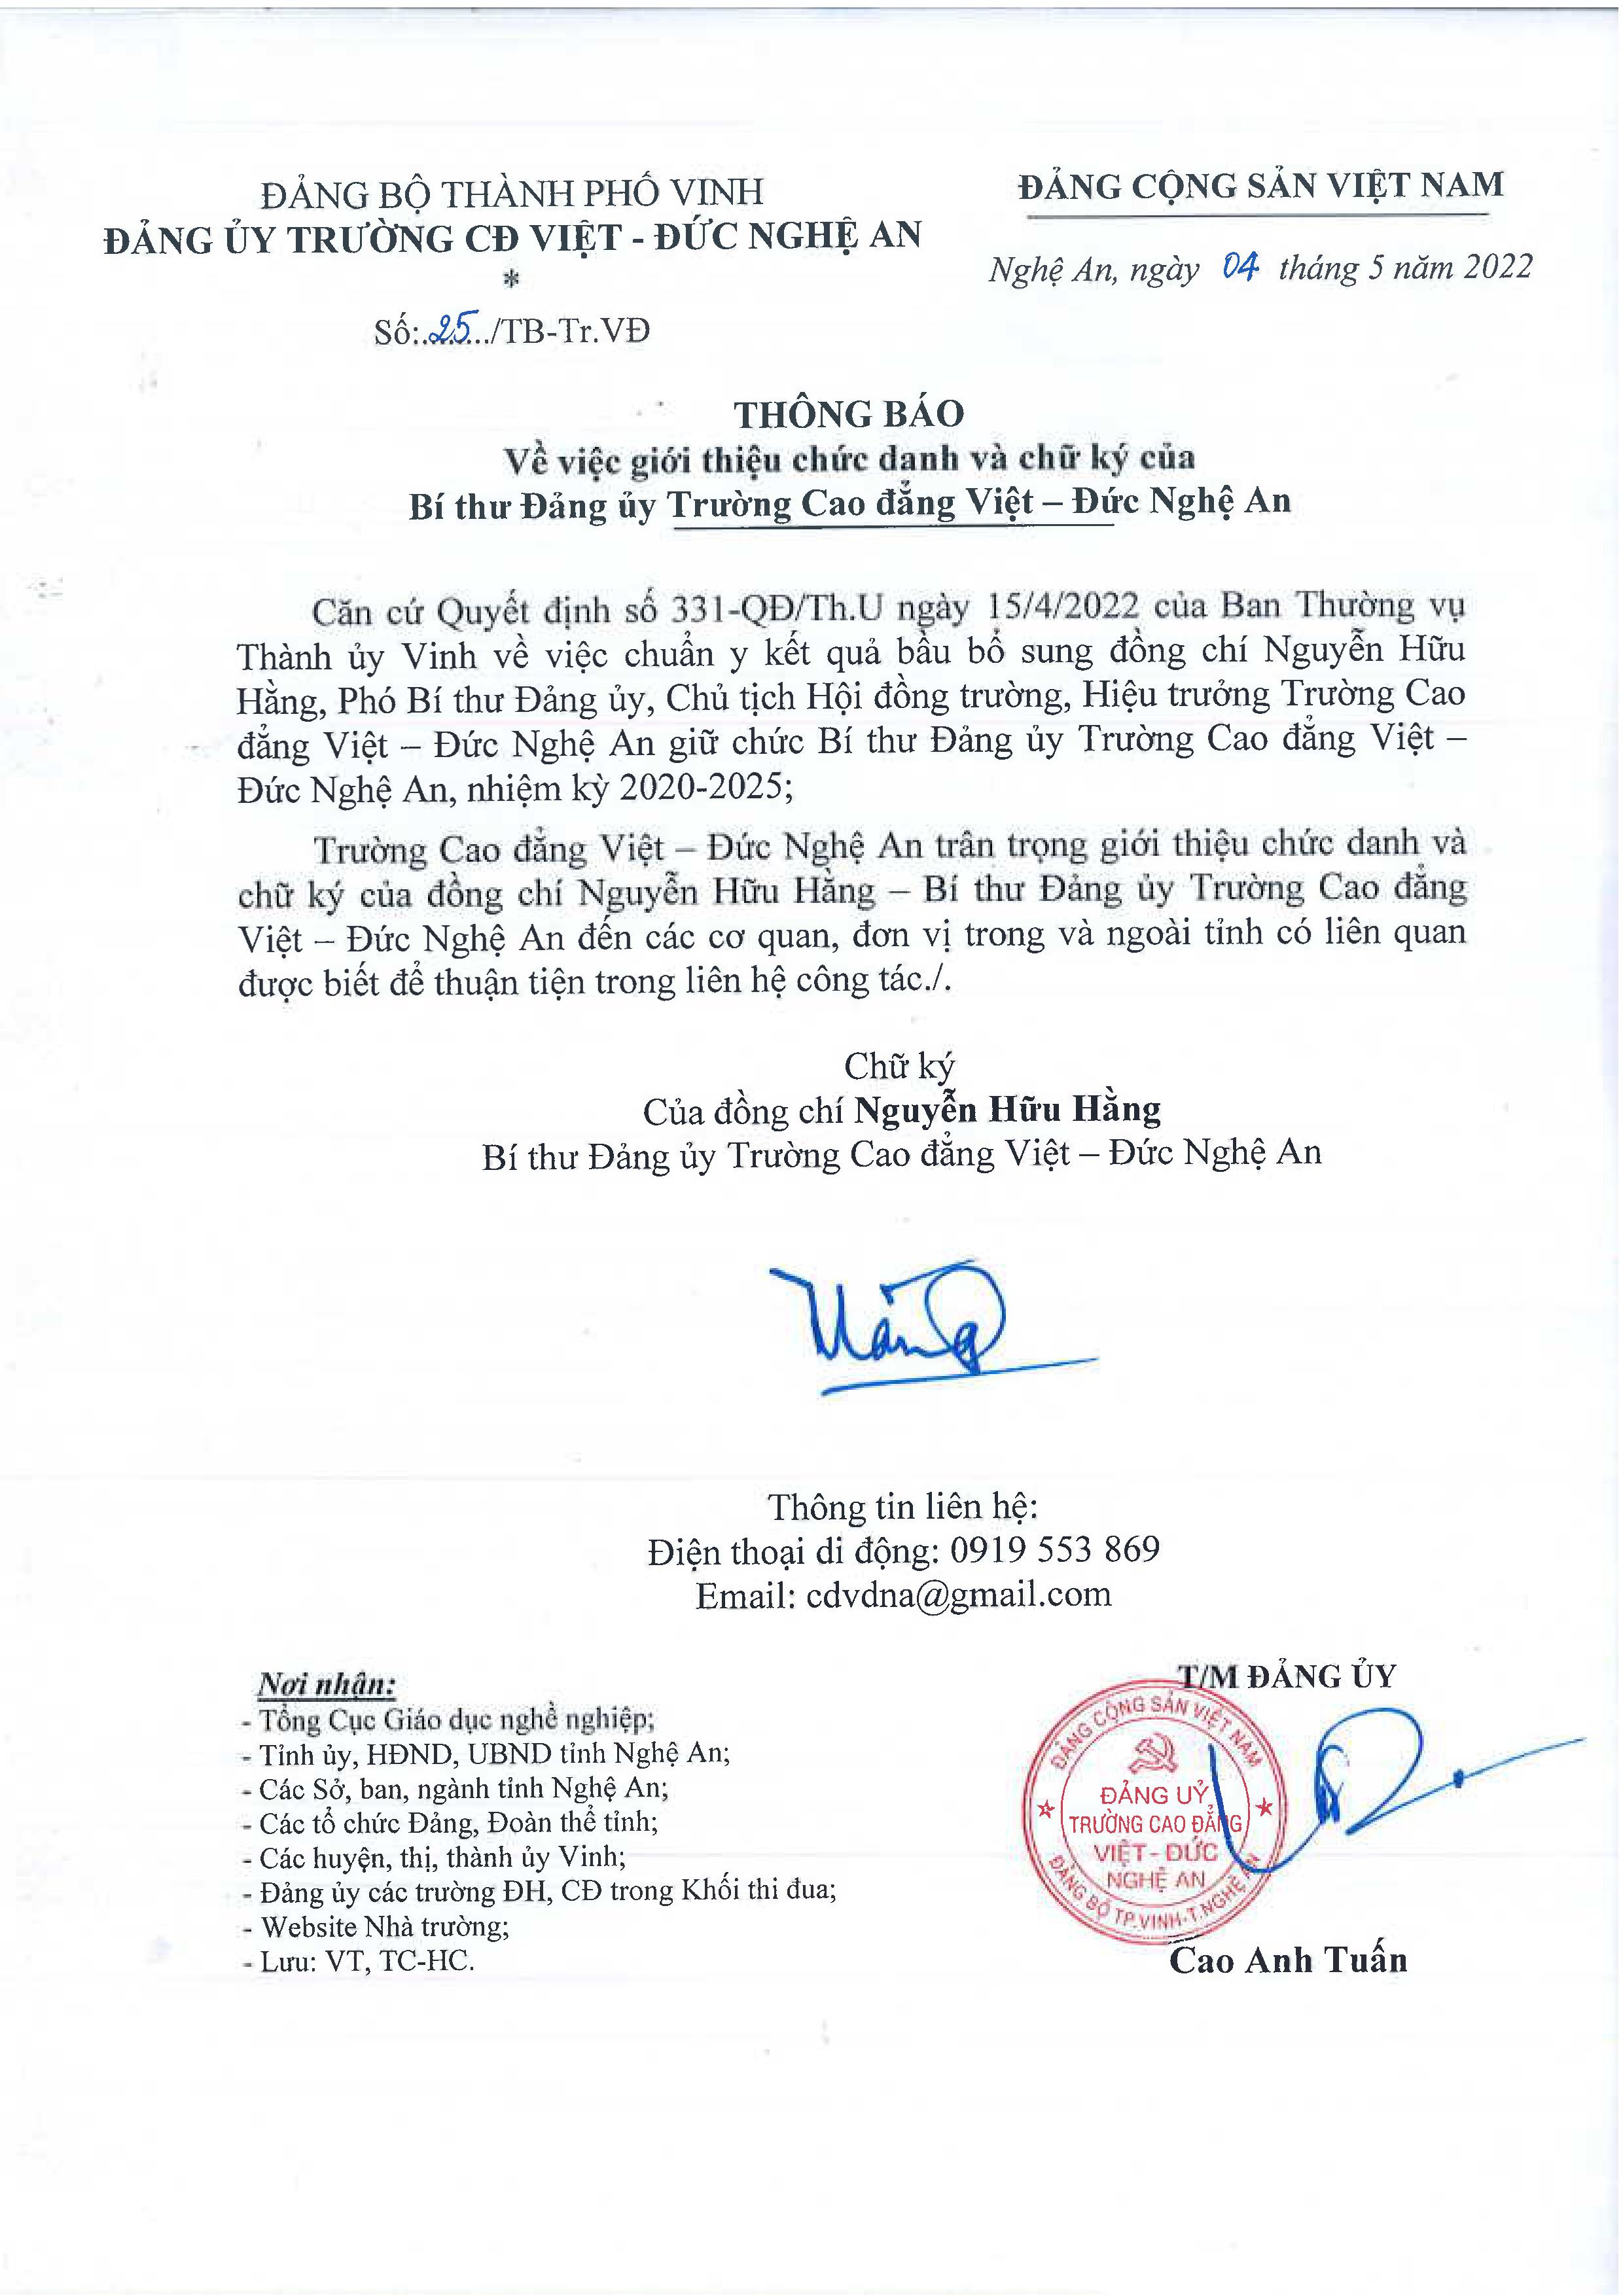  Thông báo số 25/TB-Tr.VĐ ngày 04/5/2022 của Đảng ủy Trường Cao đẳng Việt - Đức Nghệ An về việc giới thiệu chức danh và chữ ký của Bí thư Đảng ủy Trường Cao đẳng Việt - Đức Nghệ An